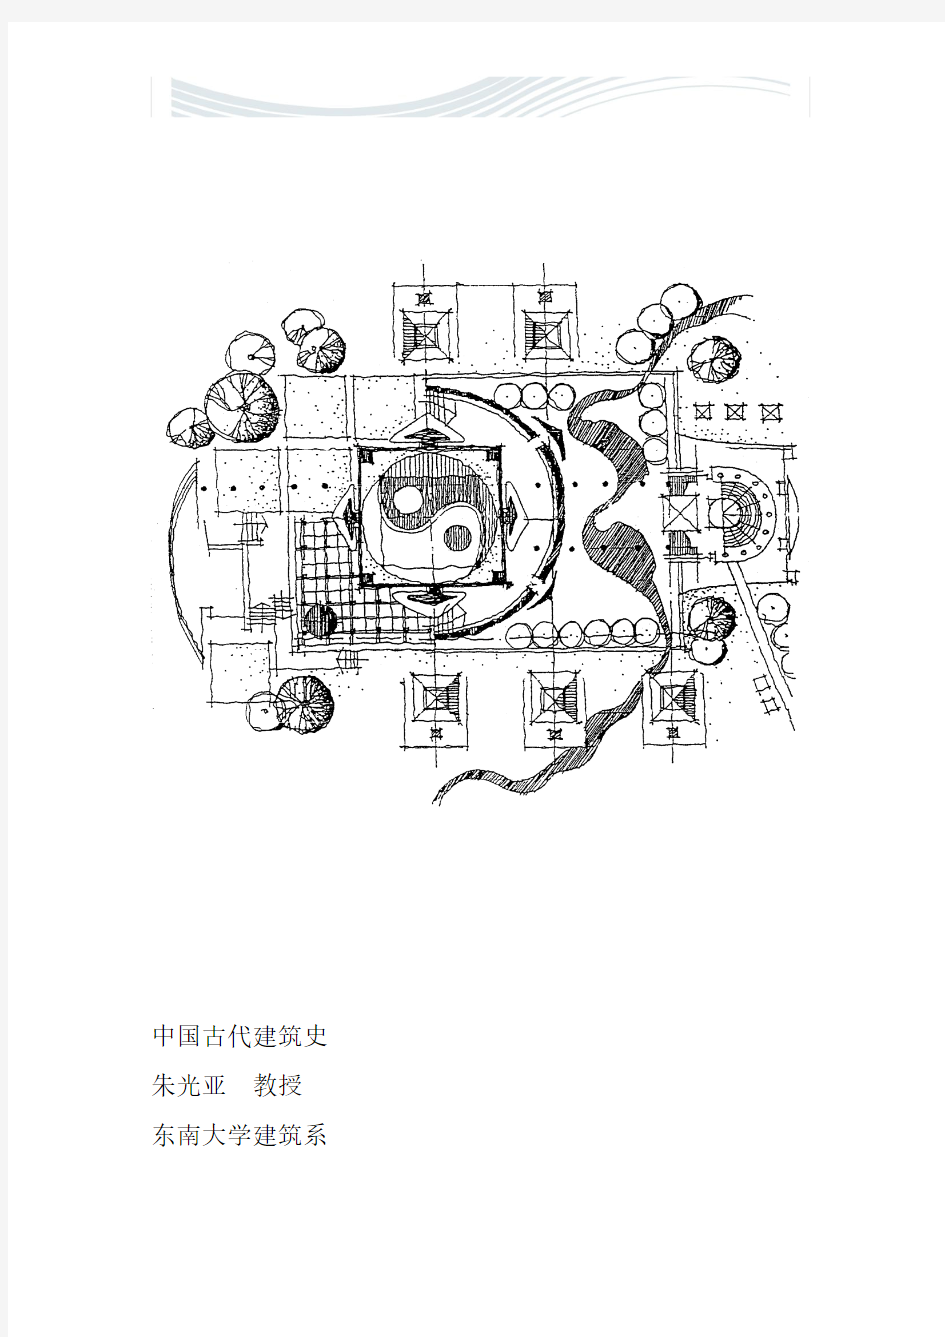 中国建筑史(东南大学朱教授)建筑 考研 笔记 【自己一个字一个字整理的】[精品文档]